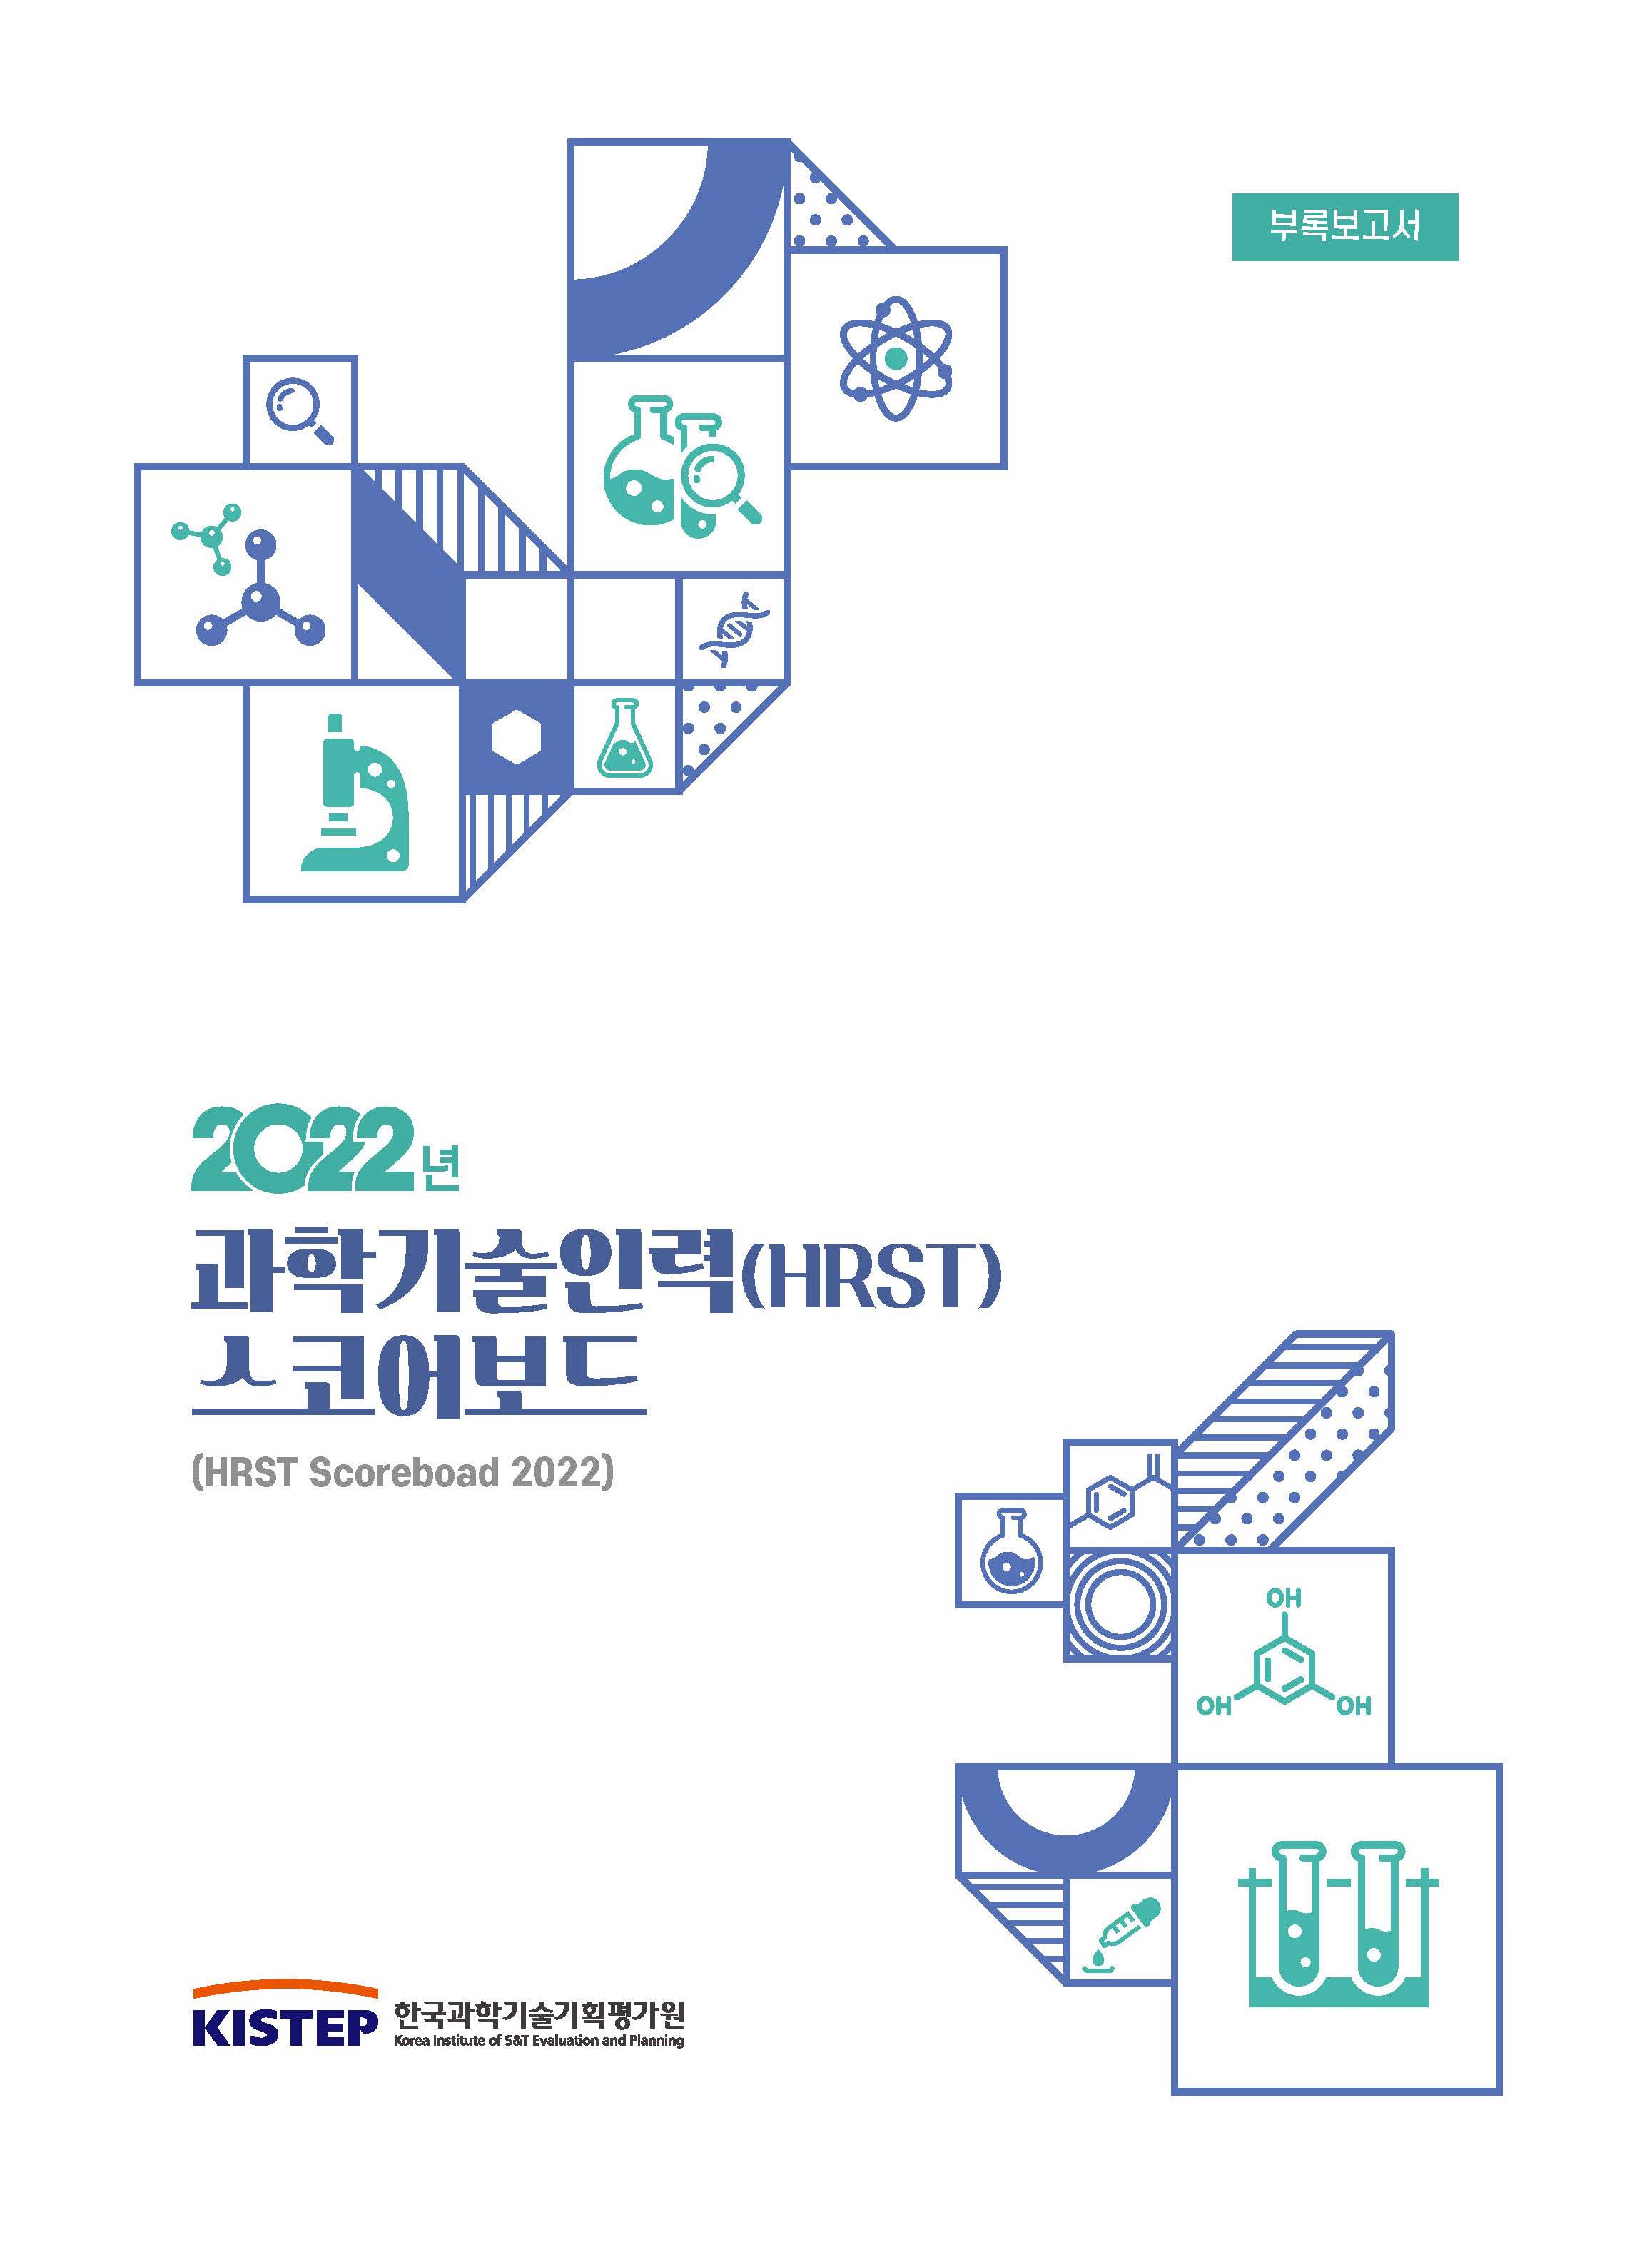 2022년 과학기술인력(HRST) 스코어보드